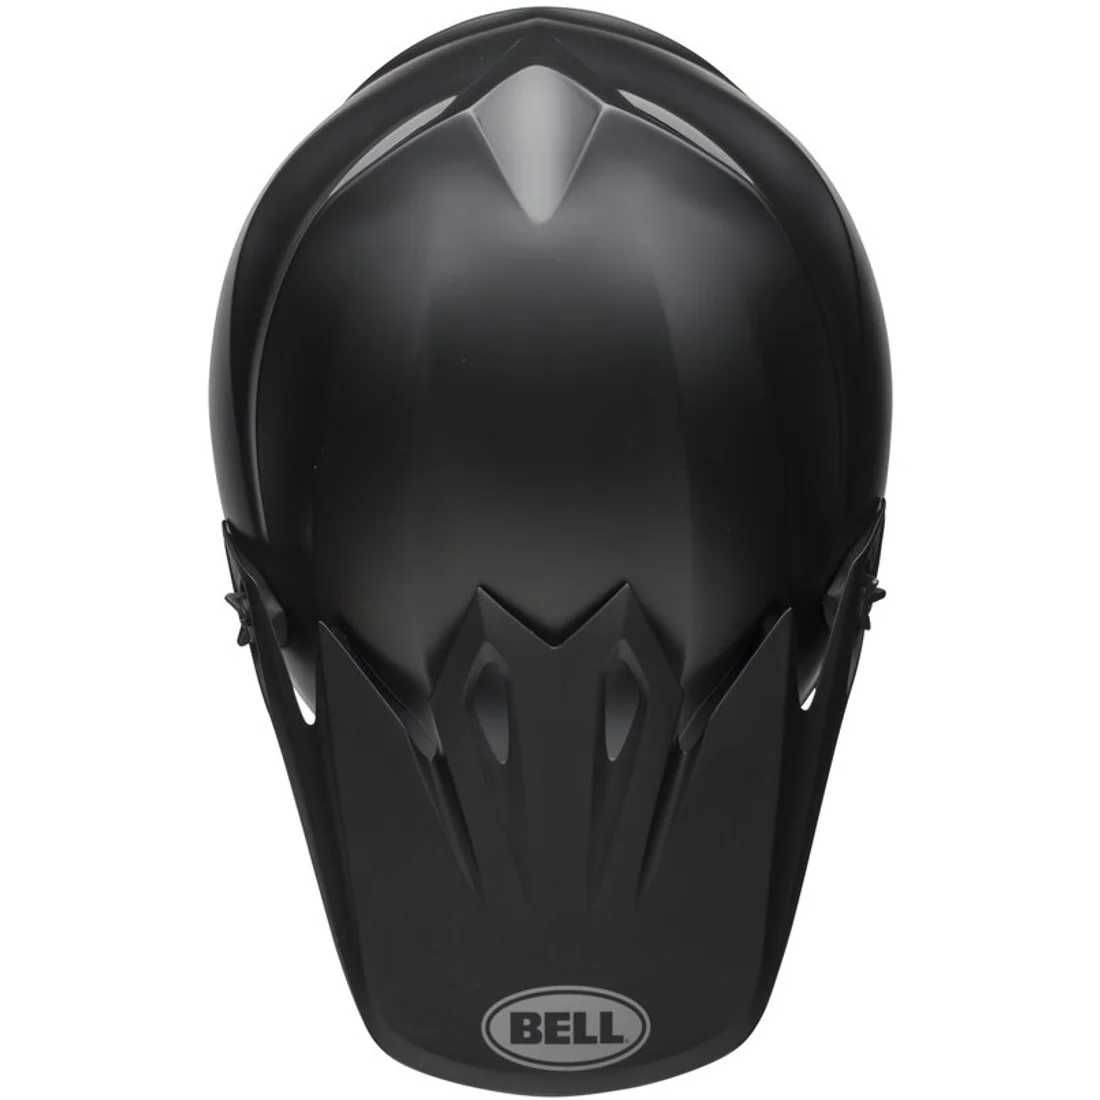 BELL MX-9 MIPS MATT BLACK